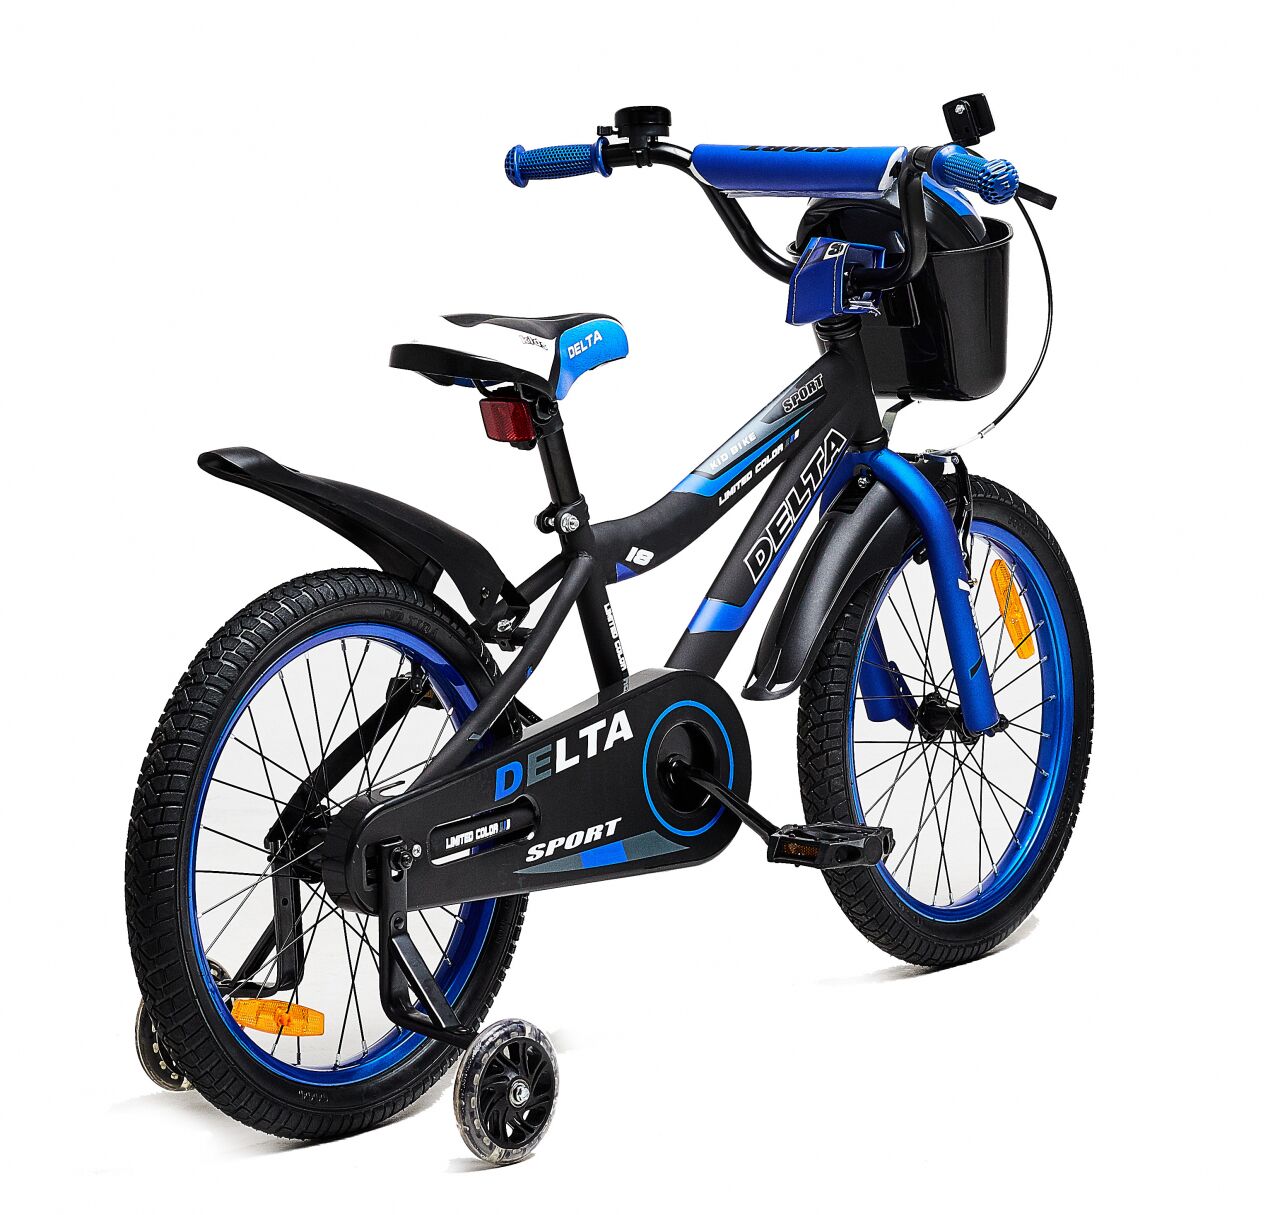 Детский велосипед DELTA Sport 16 (черный/синий, 2020)